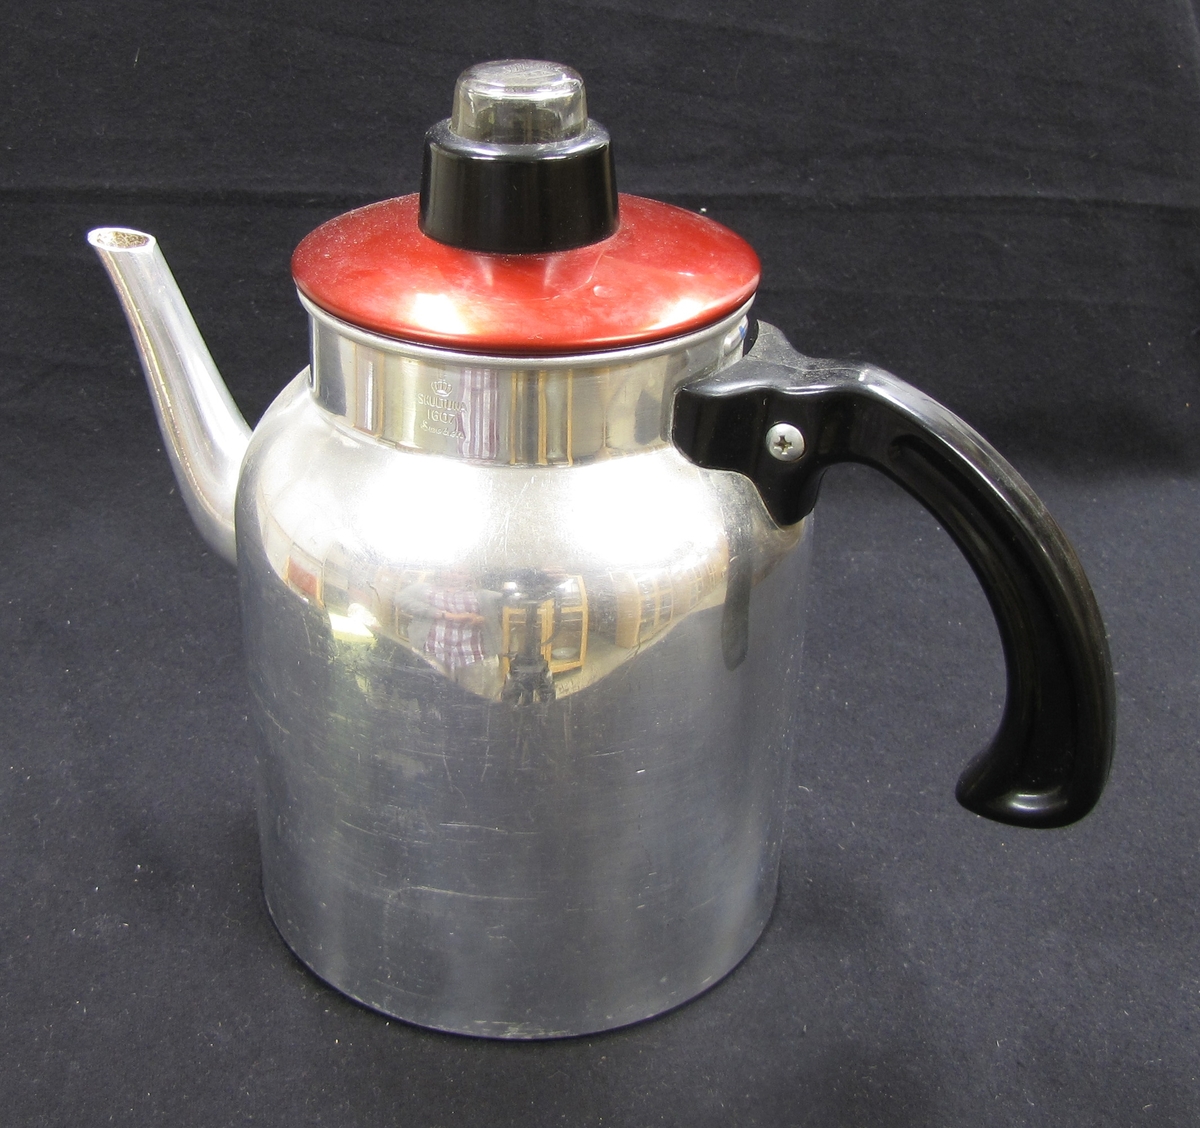 Kaffebryggarna har insatser för kaffepulver och filtrering. Rött lock med glasknopp.

Föremålen ingår i en samling från 1950 och 1960-talet. som använts vid olika skolkök i Trollhättans kommun. Föremålen utrangerades på 1980-talet och skänktes till Länsmuseet.